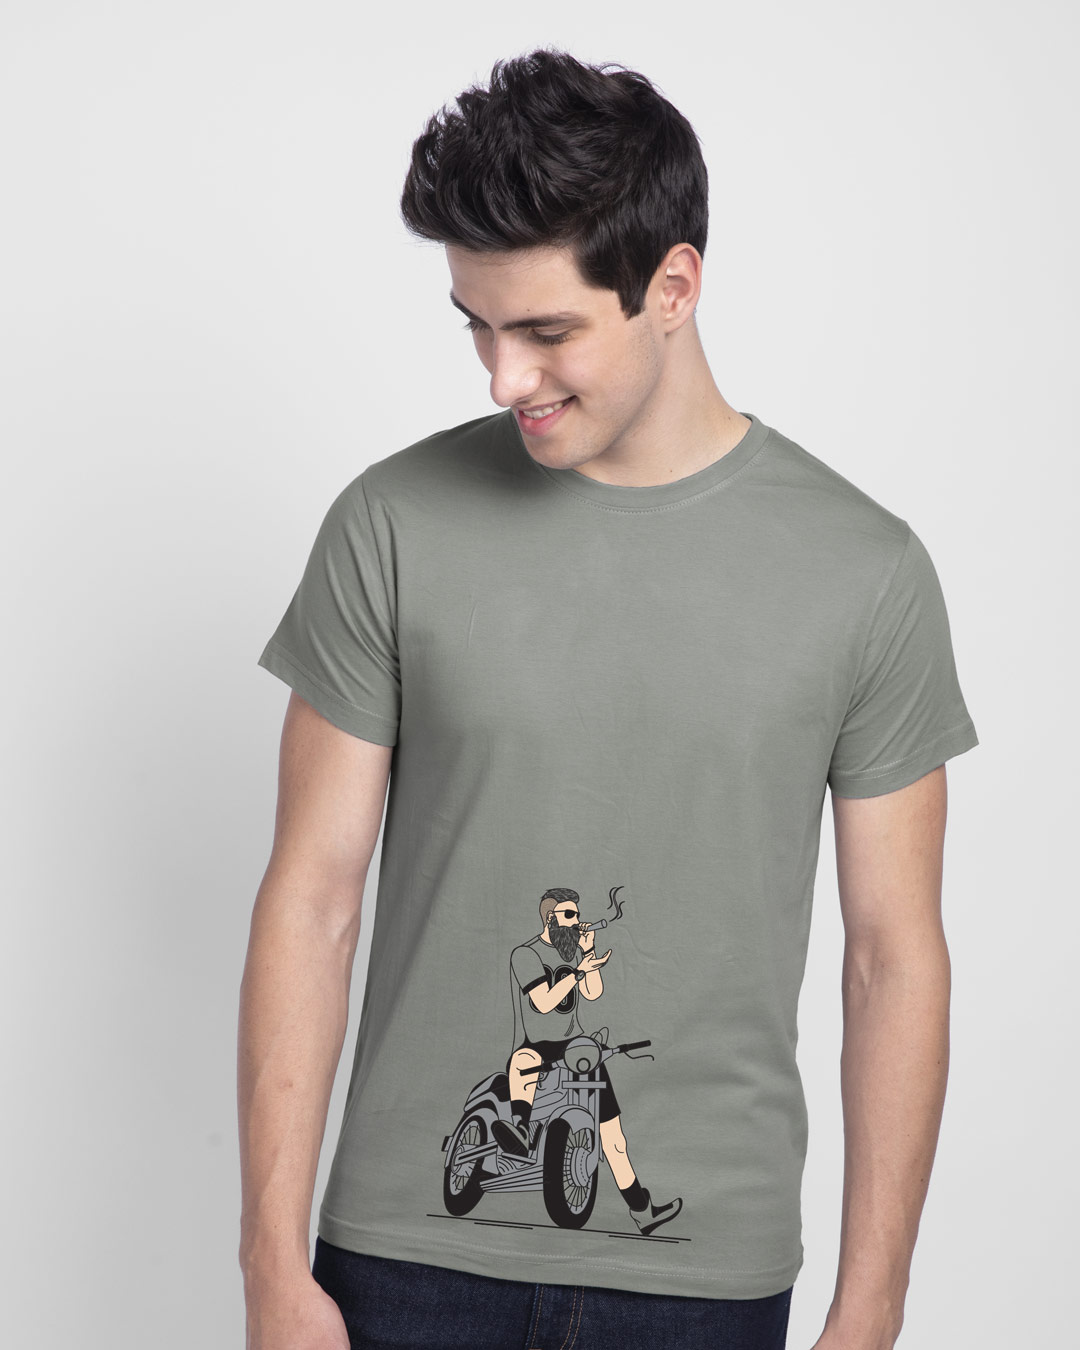 Buy Biker Swag Half Sleeve T-Shirt for Men grey Online at Bewakoof